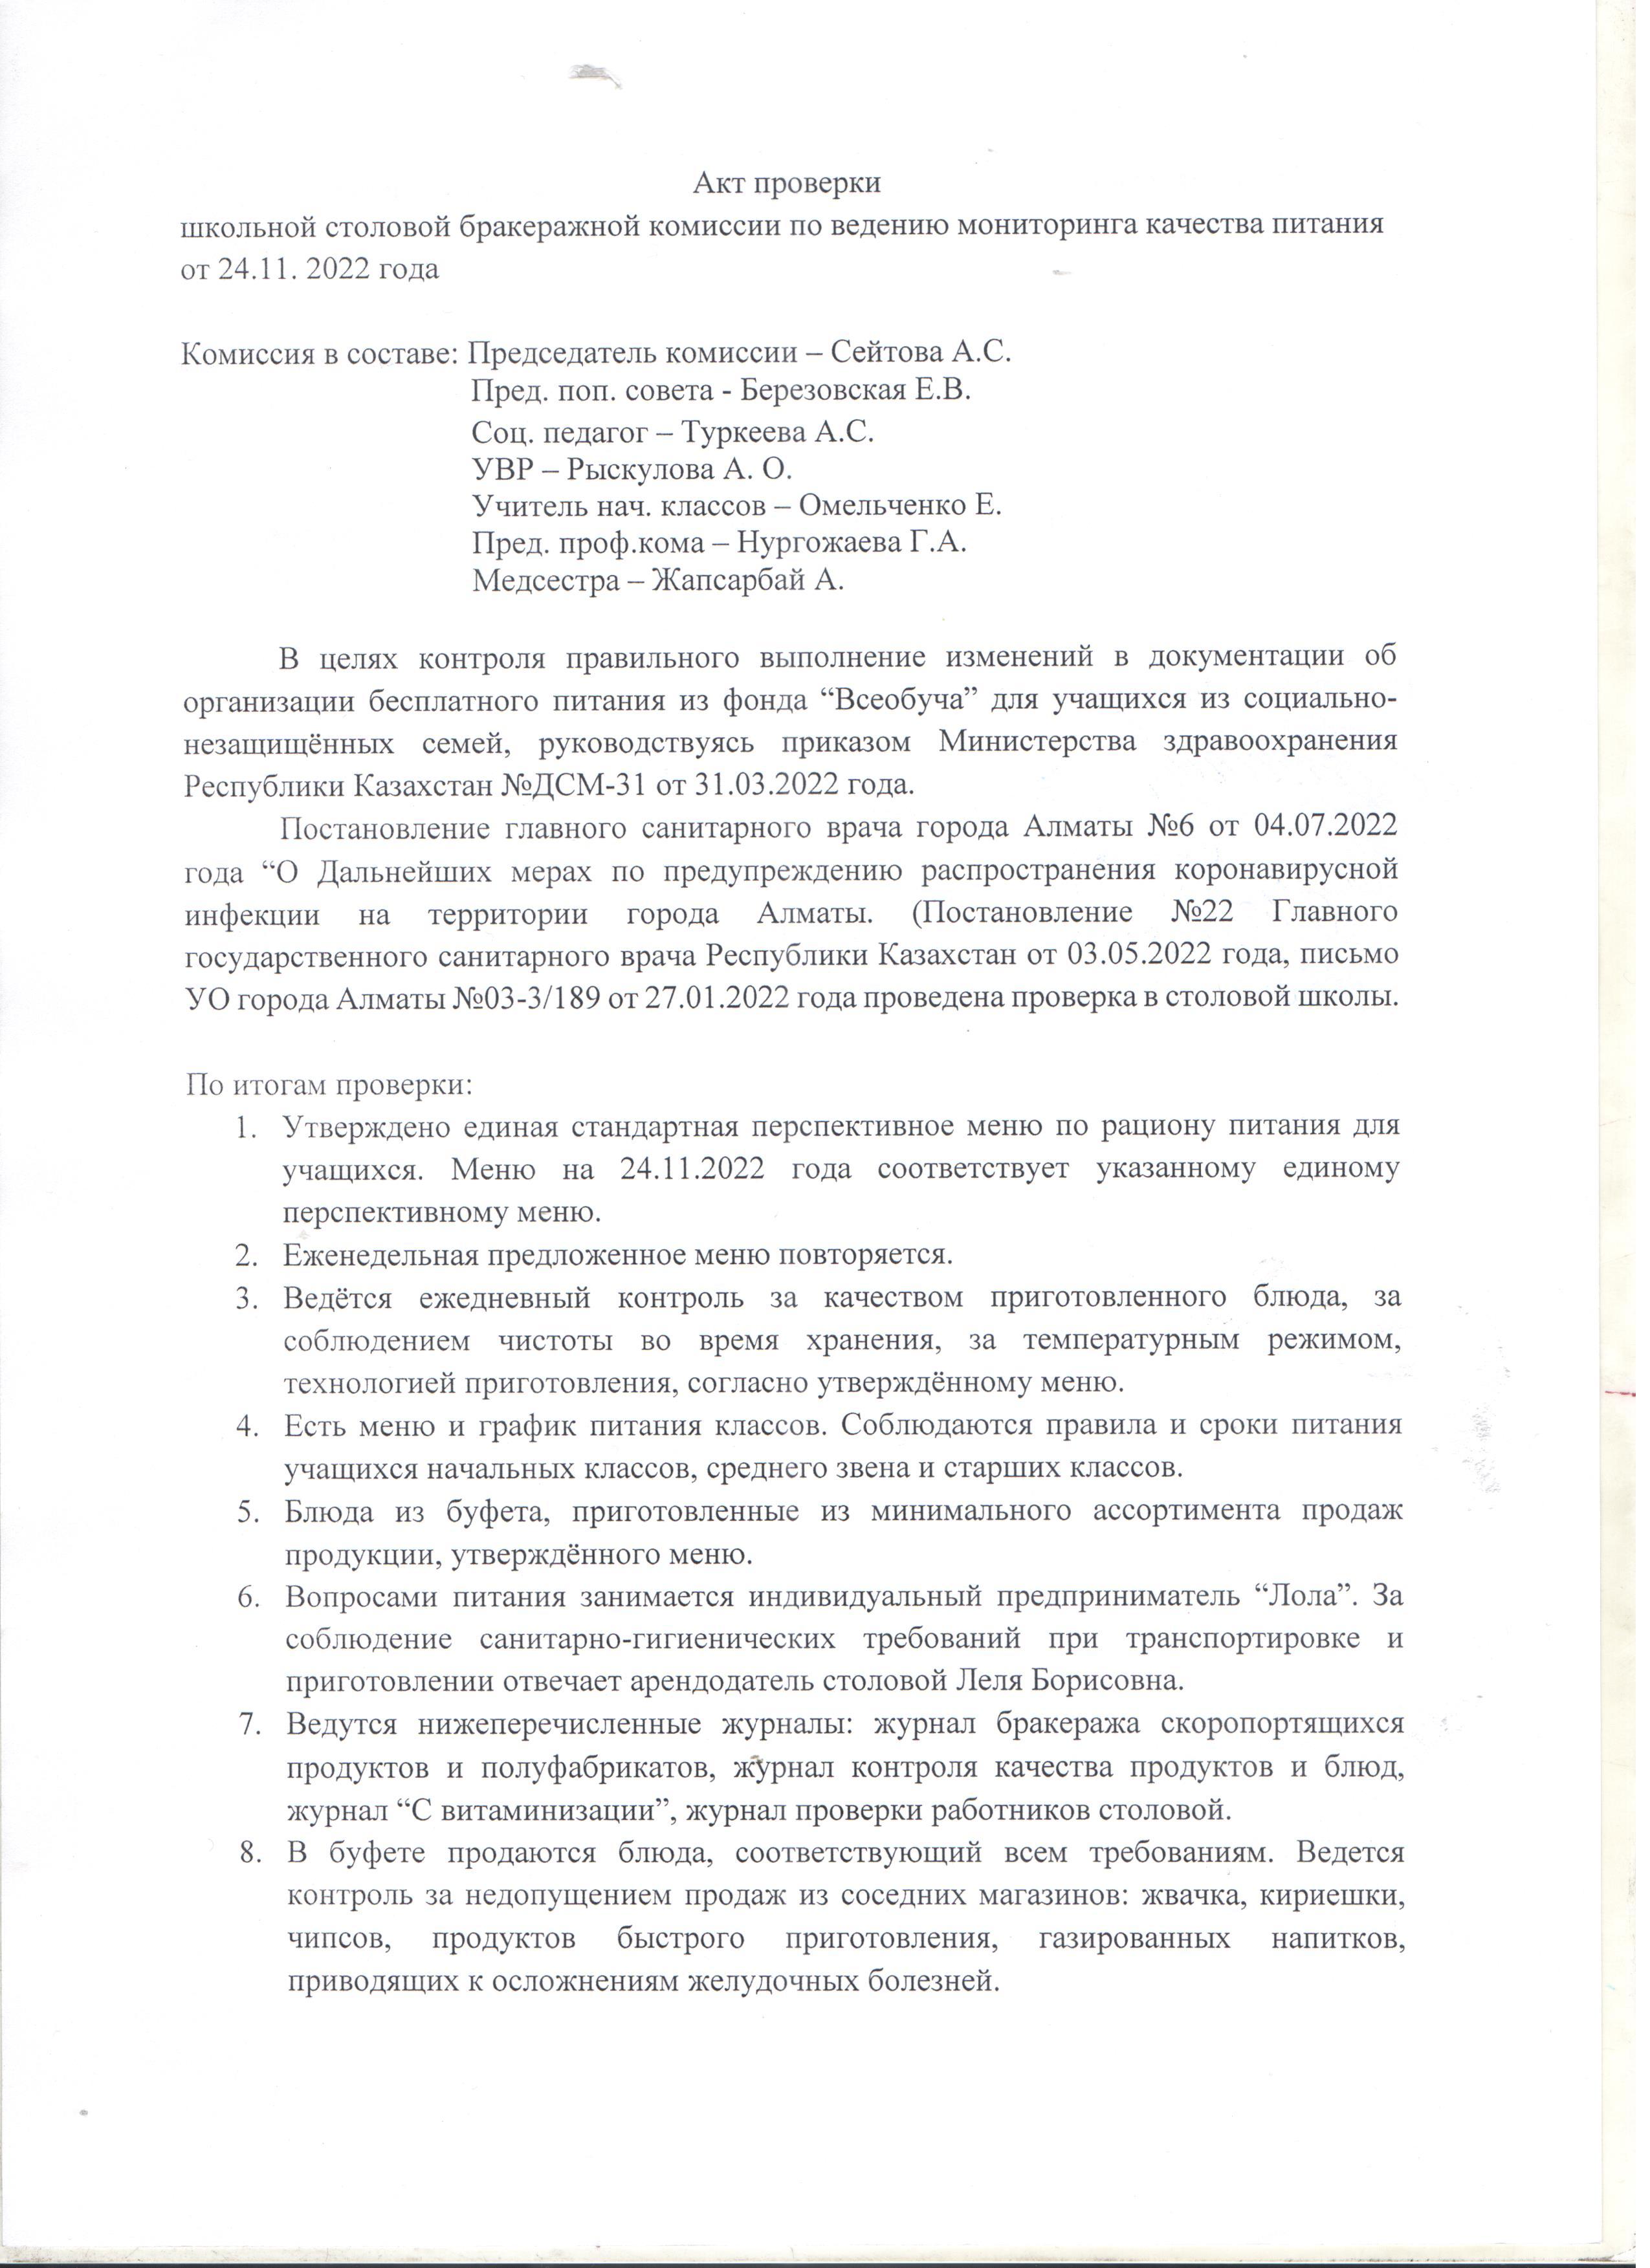 Акт проверки школьной столовой бракеражной комиссий от 24.11.2022